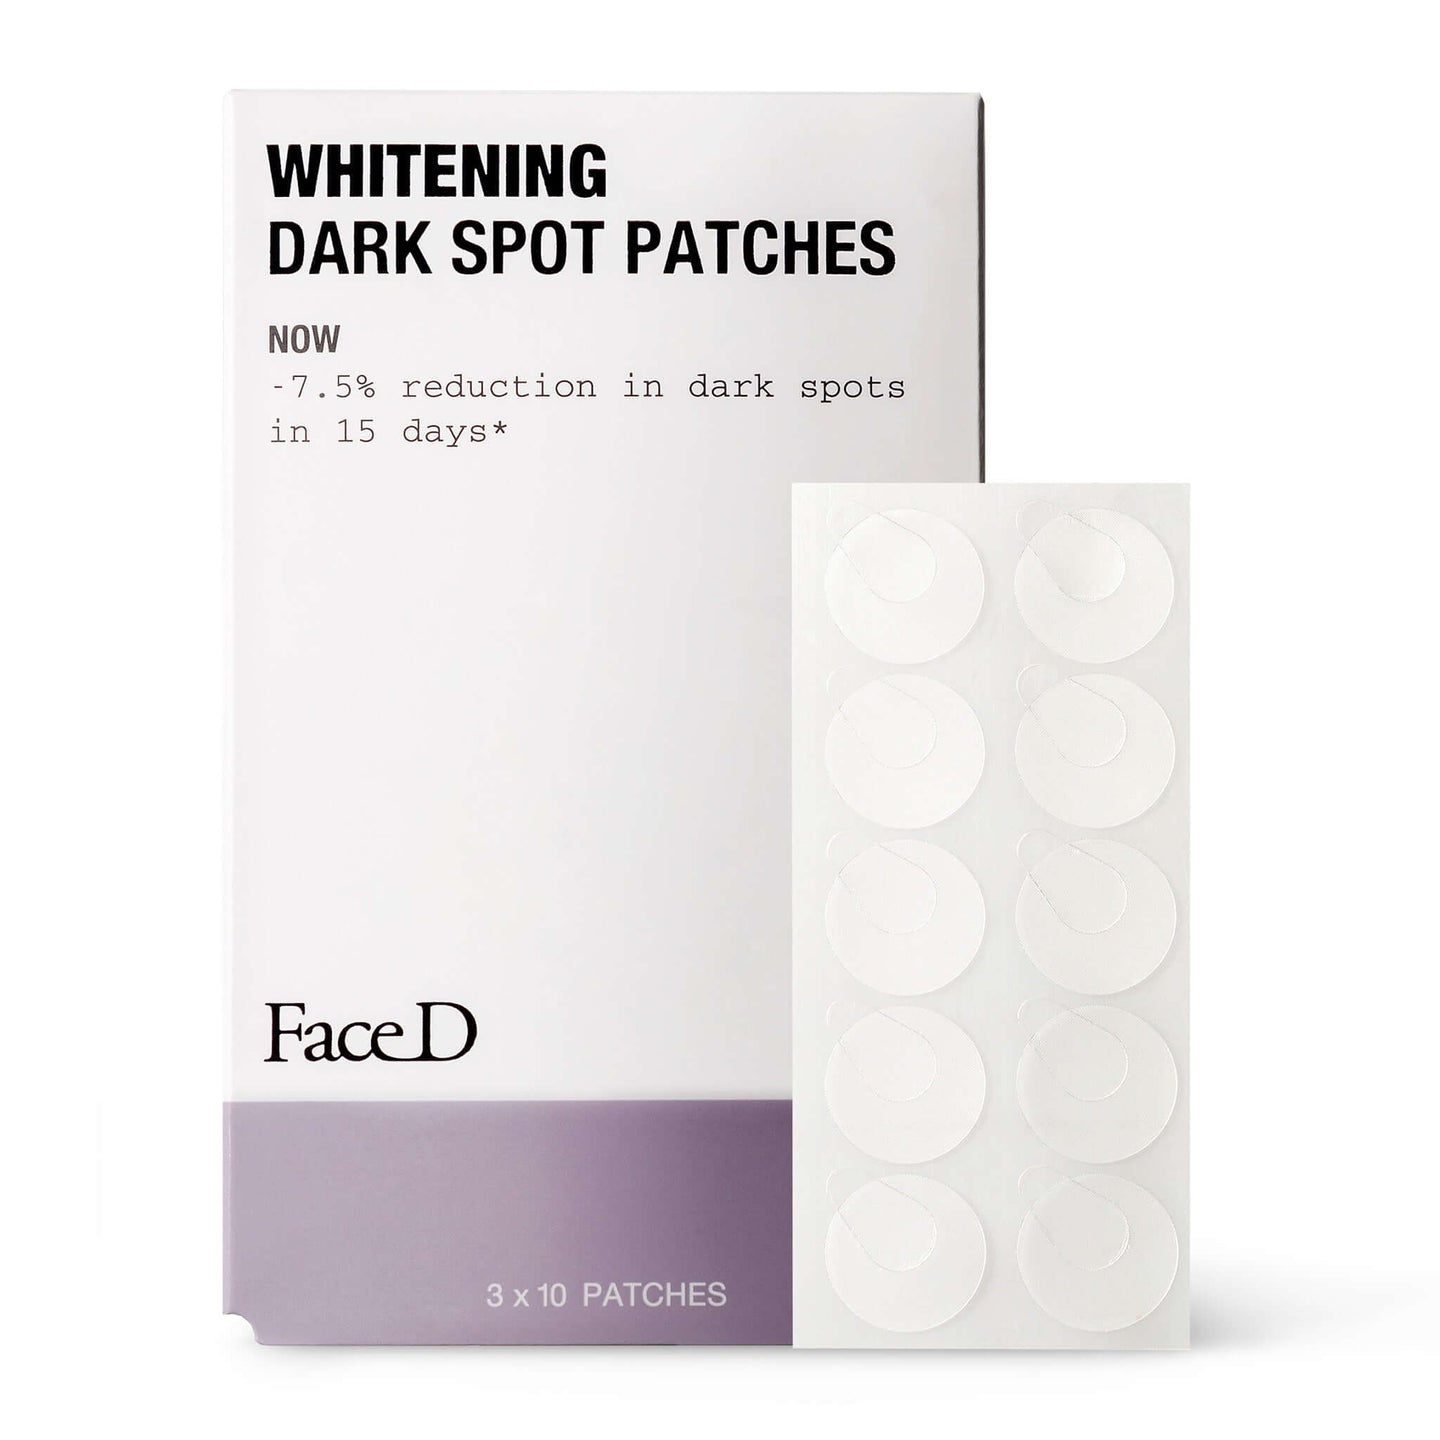 Whitening-Dark-Spot-Patches-FaceD-Anti-Dark-Spots-Pore-Minimizing || Patch-viso-corpo-schiarenti-FaceD-Contro-macchie-pori-dilatati